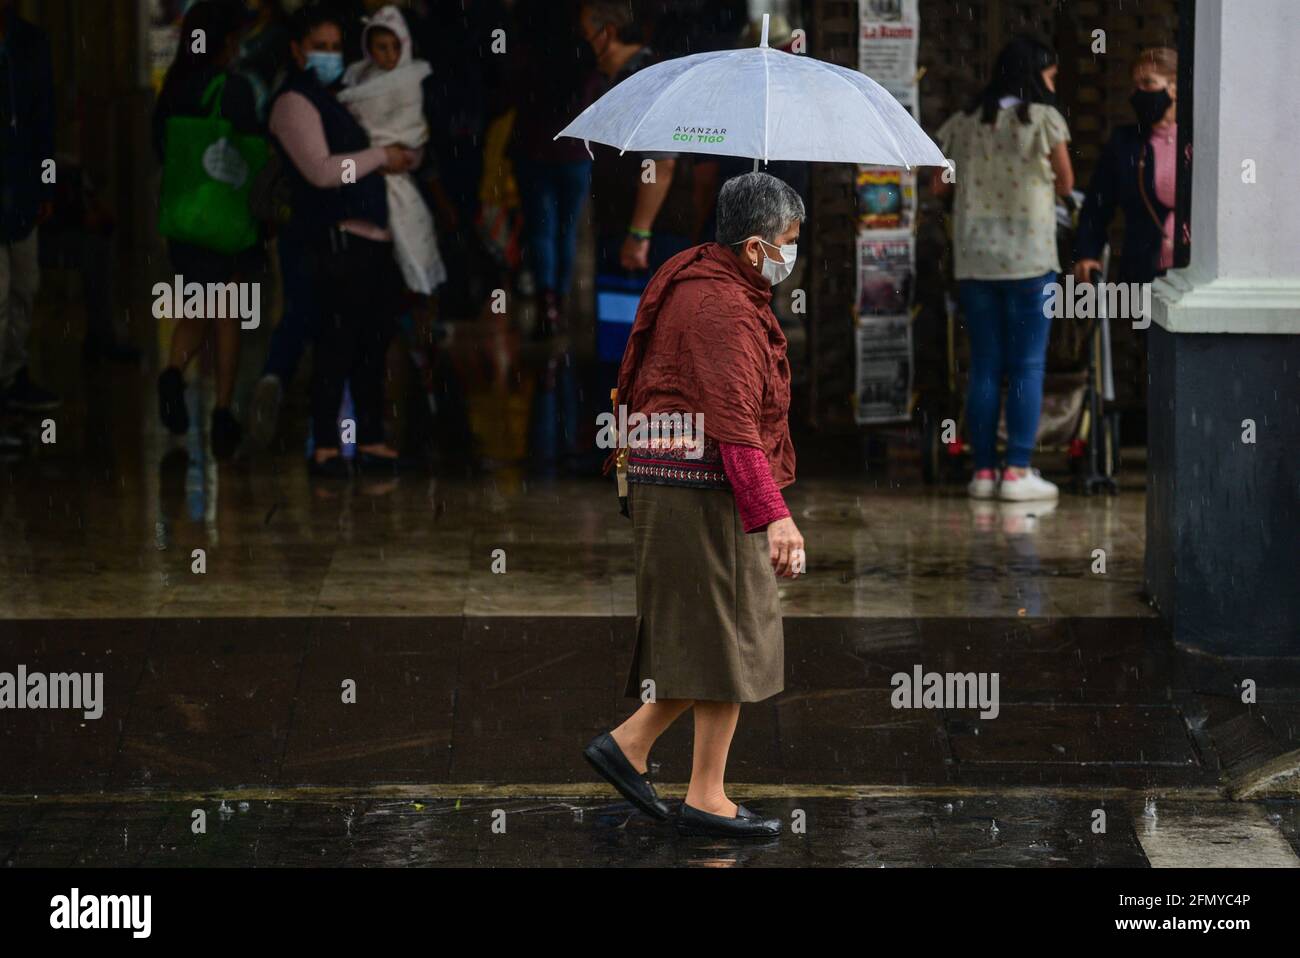 Non Exclusive: TOLUCA, MEXIKO - MAI 12: Ein älterer geht in der Innenstadt mit Sonnenschirmen, um vor den Regenfällen geschützt zu werden, da die Stadt angebrochen ist Stockfoto